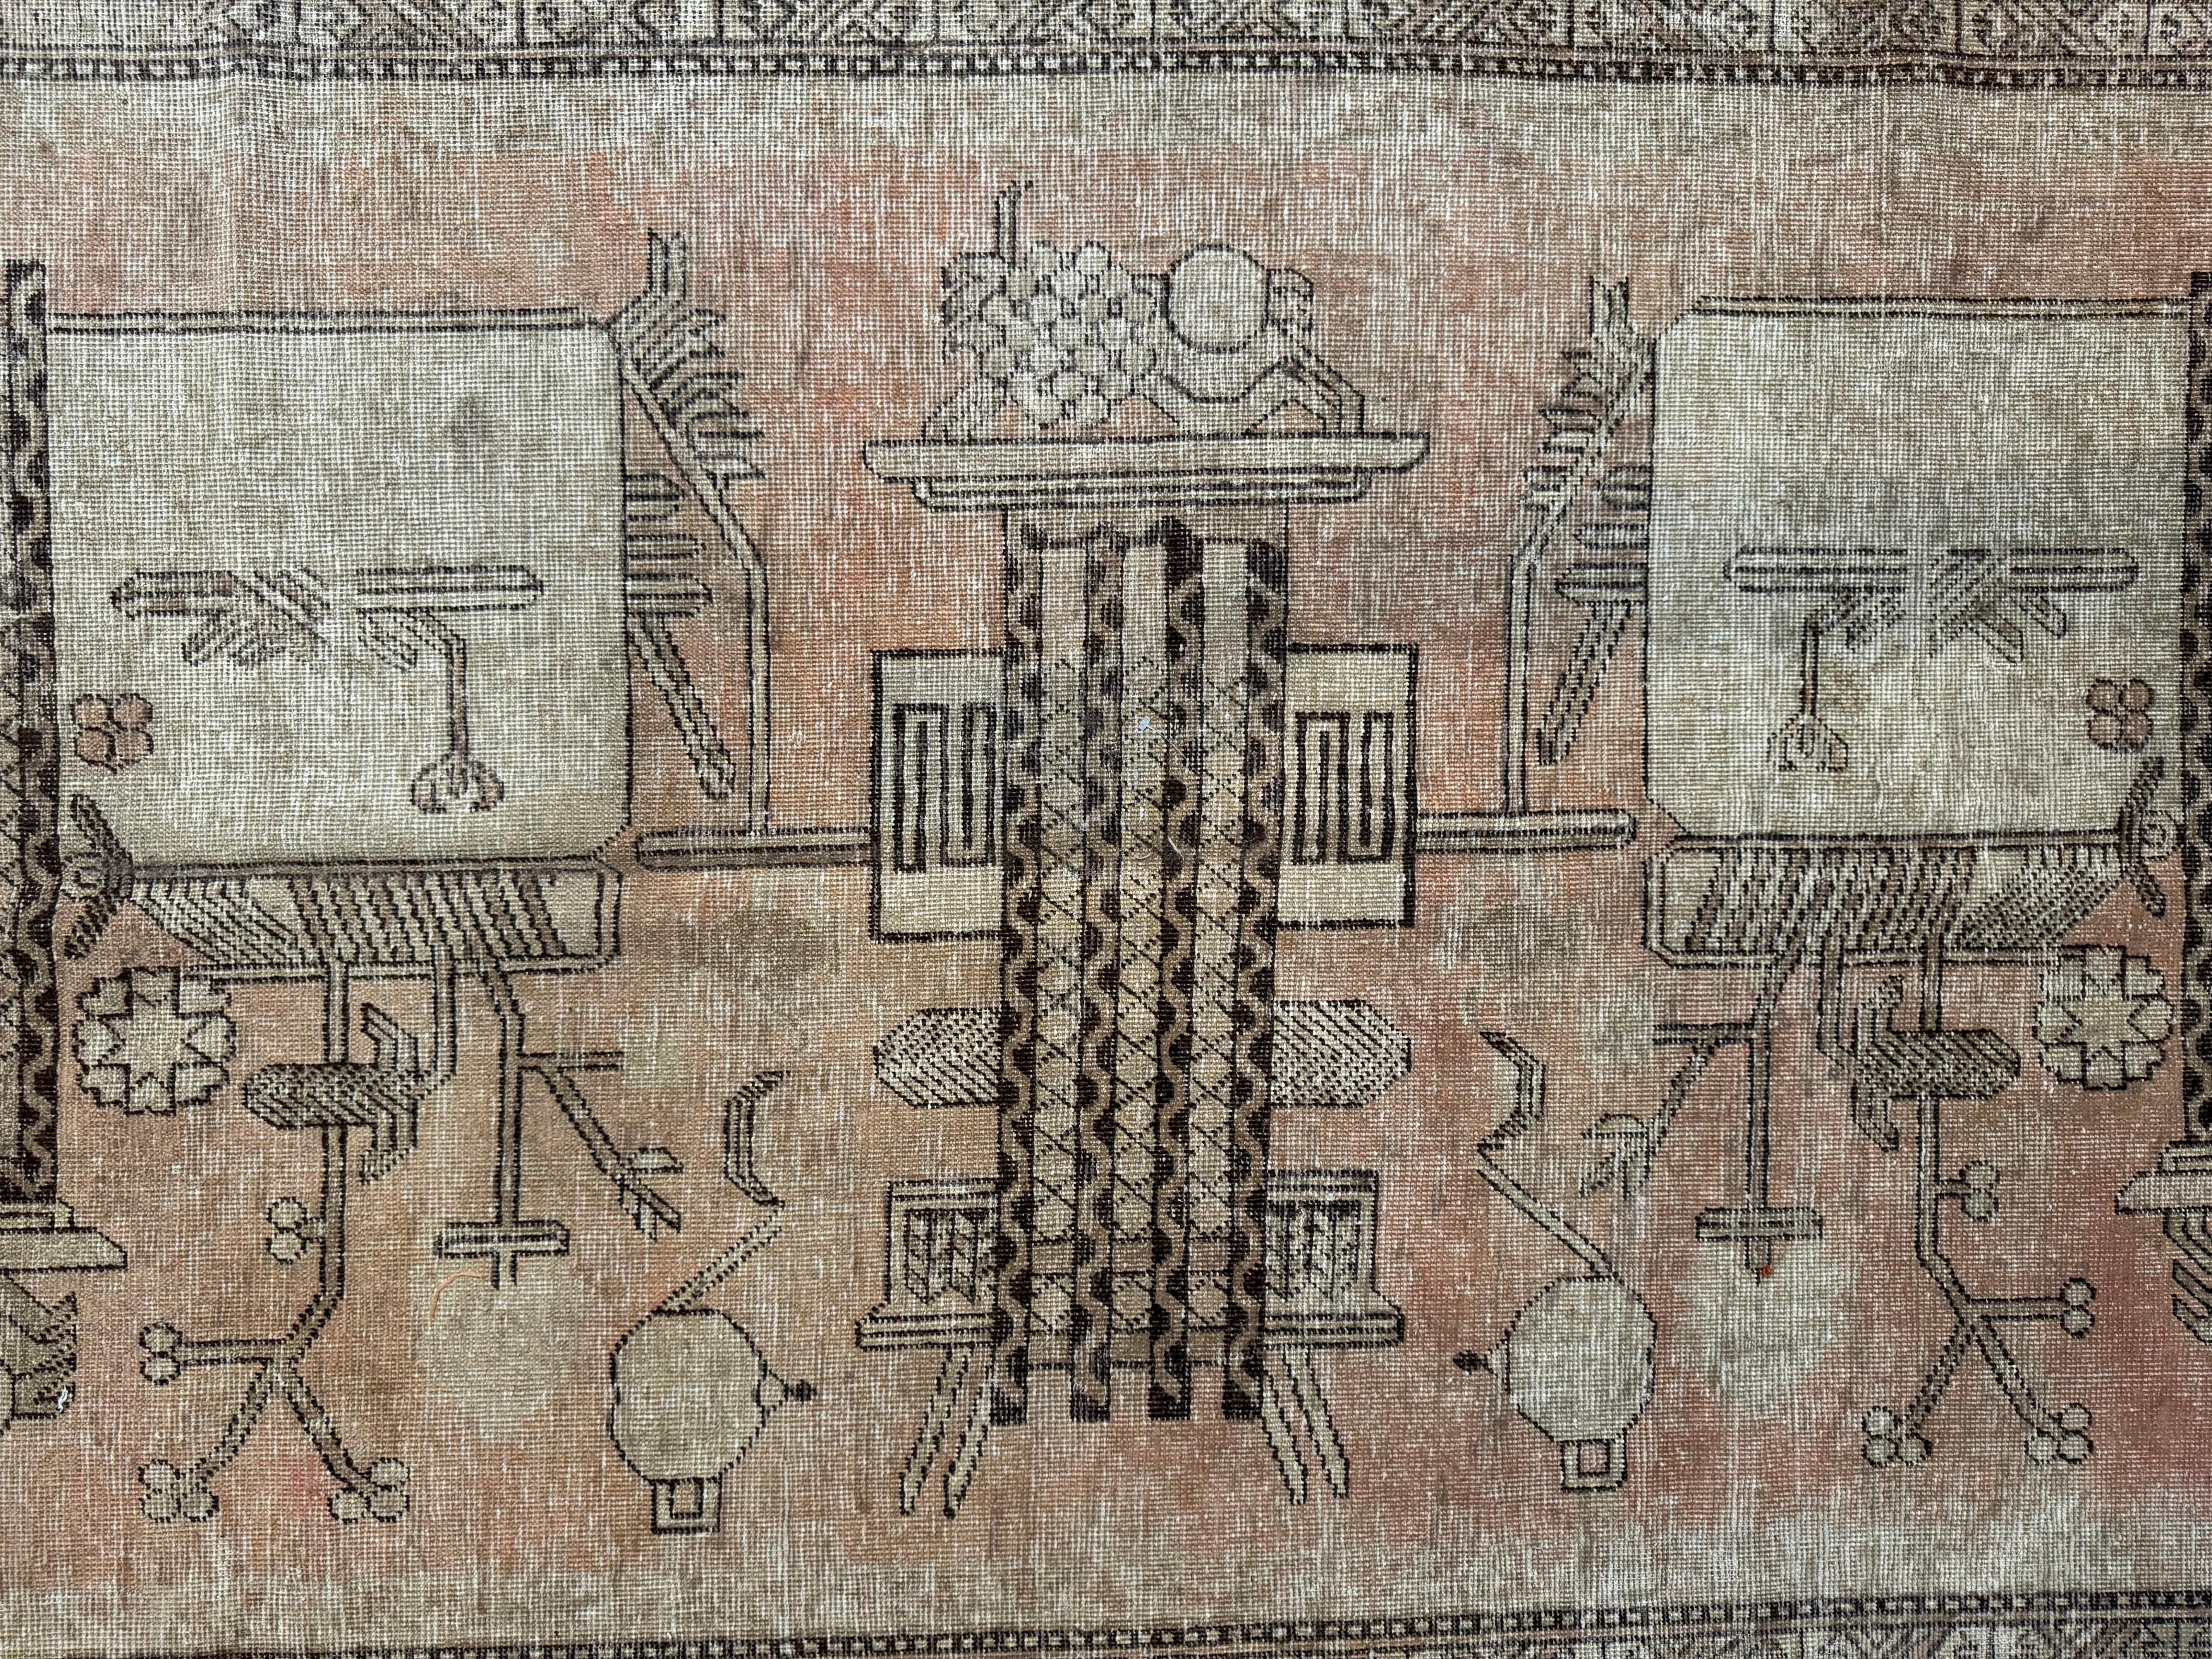 Erleben Sie Vintage-Luxus mit diesem antiken Samarkand-Teppich aus dem 19. Jahrhundert, der 10,10' x 5,7' groß ist. Die filigranen Muster und kräftigen Farben bereichern jeden amerikanischen Raum und bieten eine perfekte Mischung aus historischem